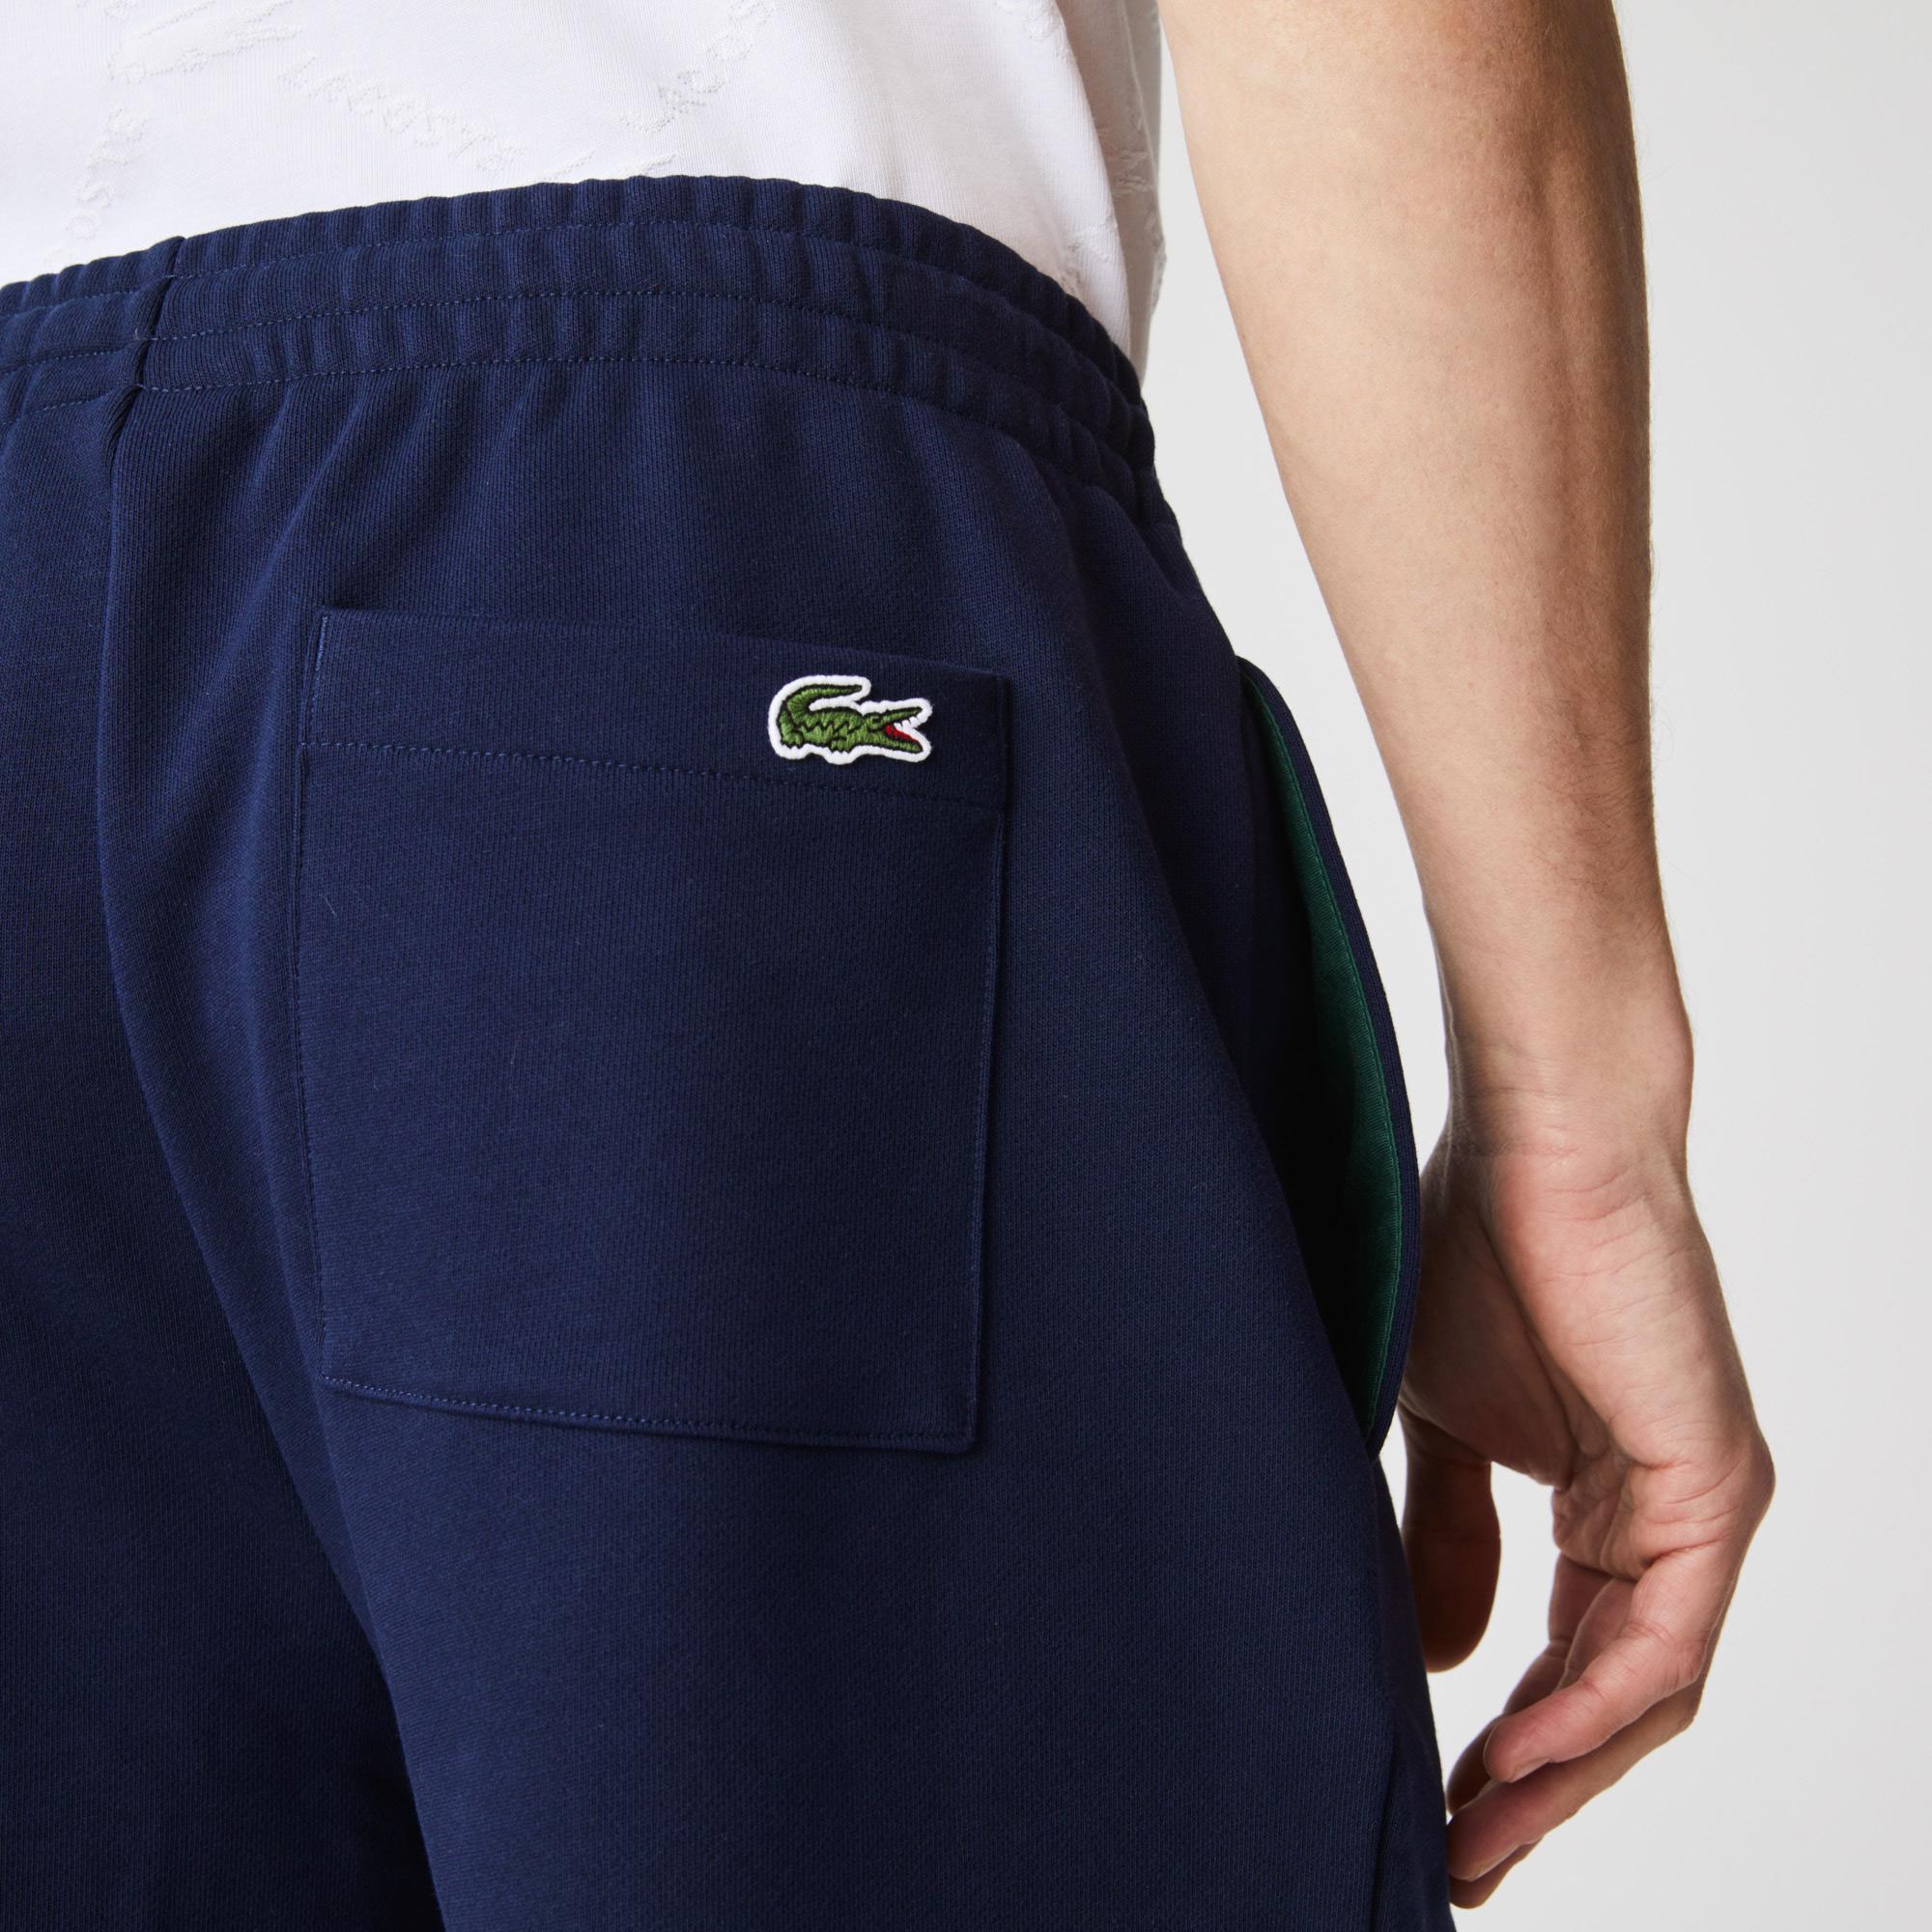 
Lacoste Men's shorts